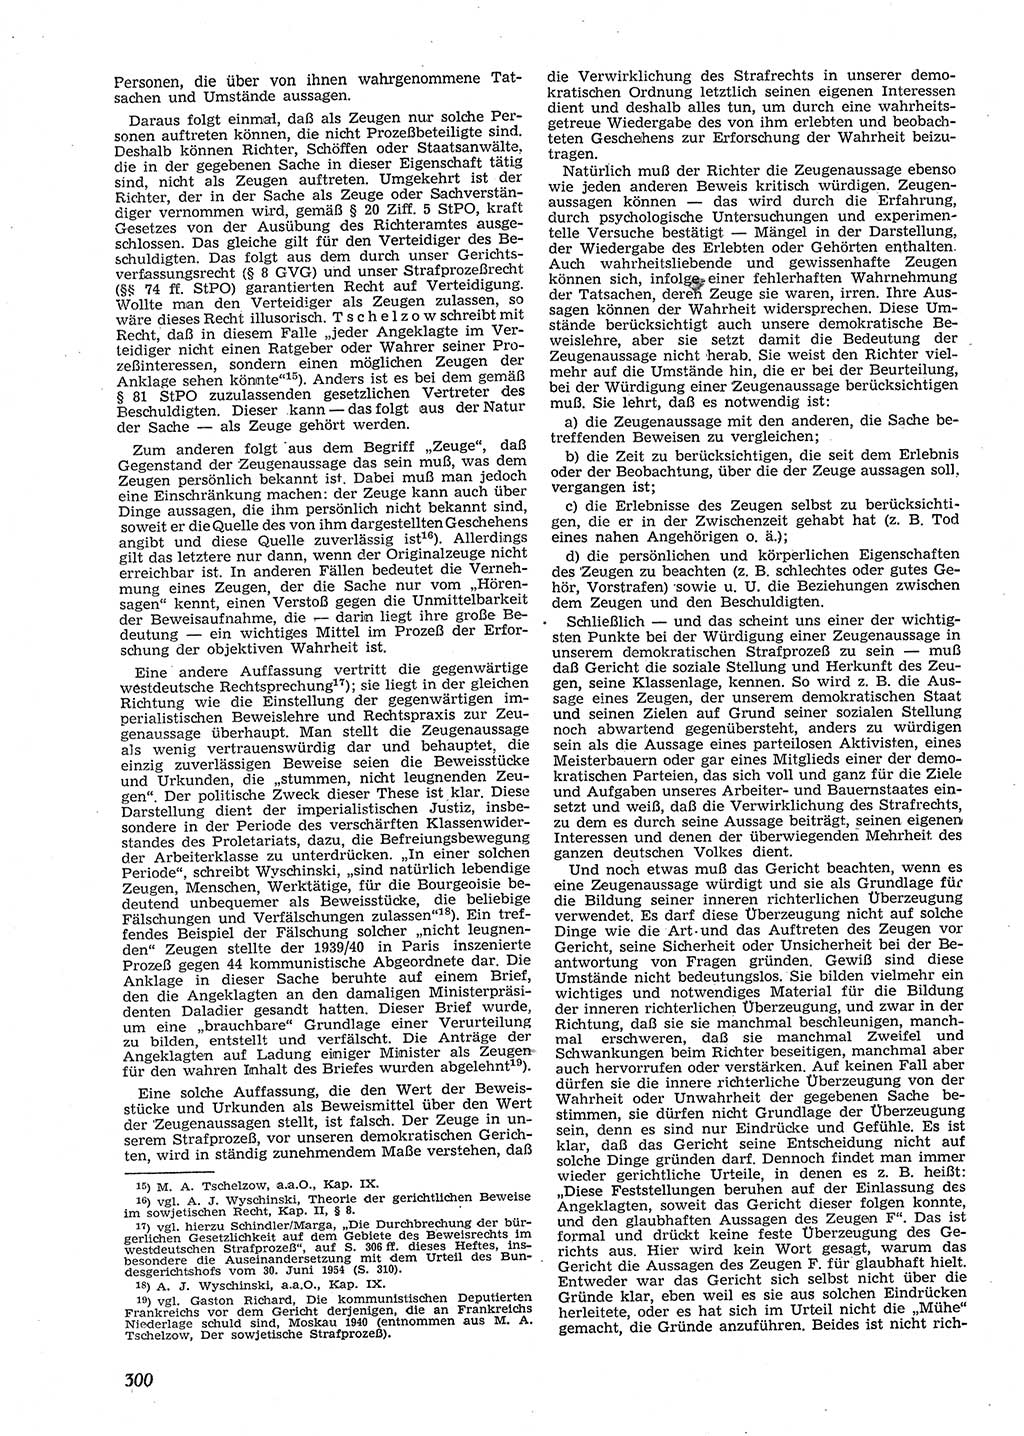 Neue Justiz (NJ), Zeitschrift für Recht und Rechtswissenschaft [Deutsche Demokratische Republik (DDR)], 9. Jahrgang 1955, Seite 300 (NJ DDR 1955, S. 300)